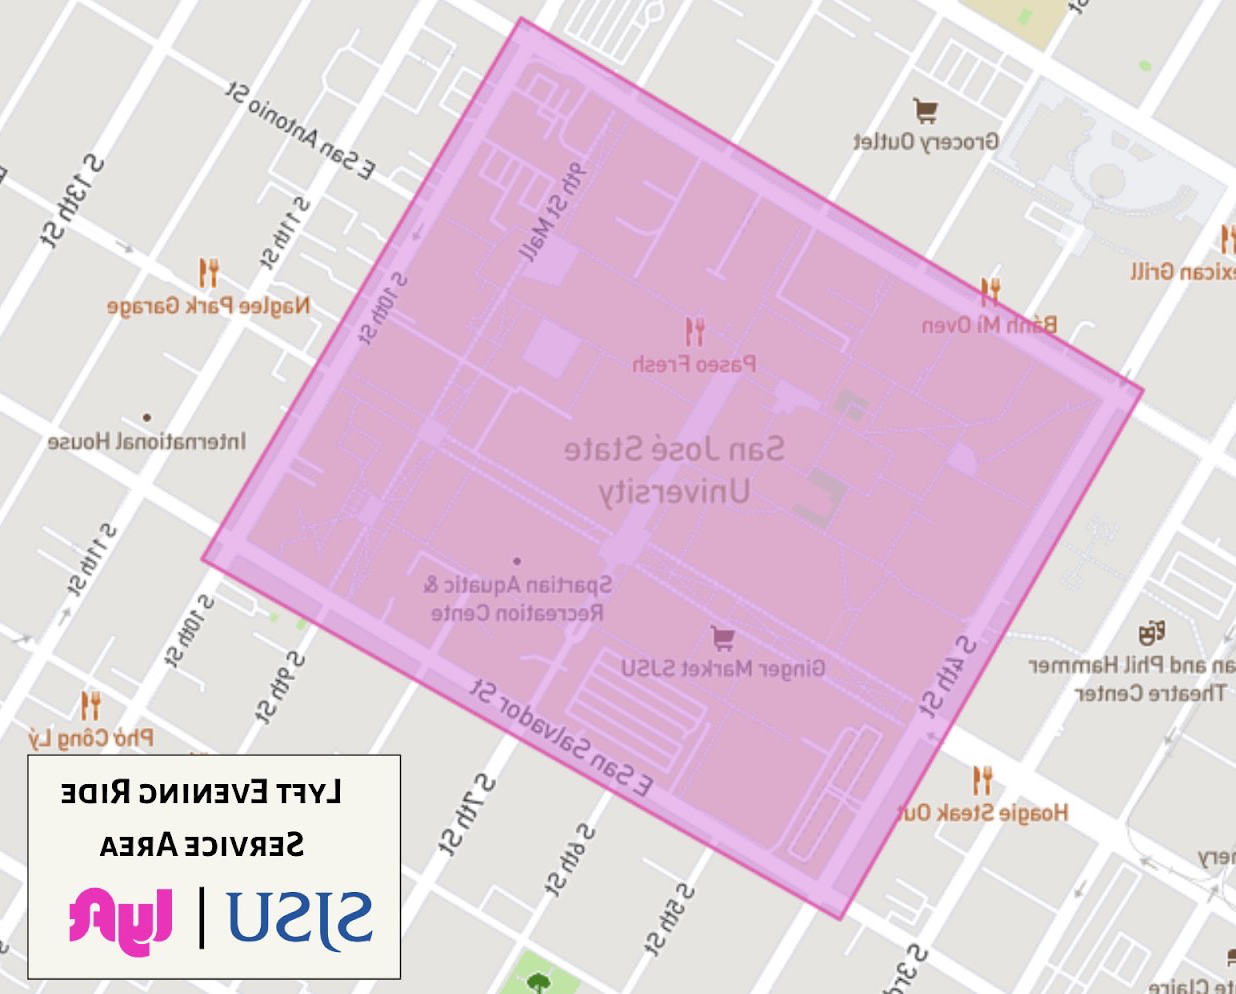 上海大学地图，粉色高亮的校园和附近地区，以显示lyft服务的边界